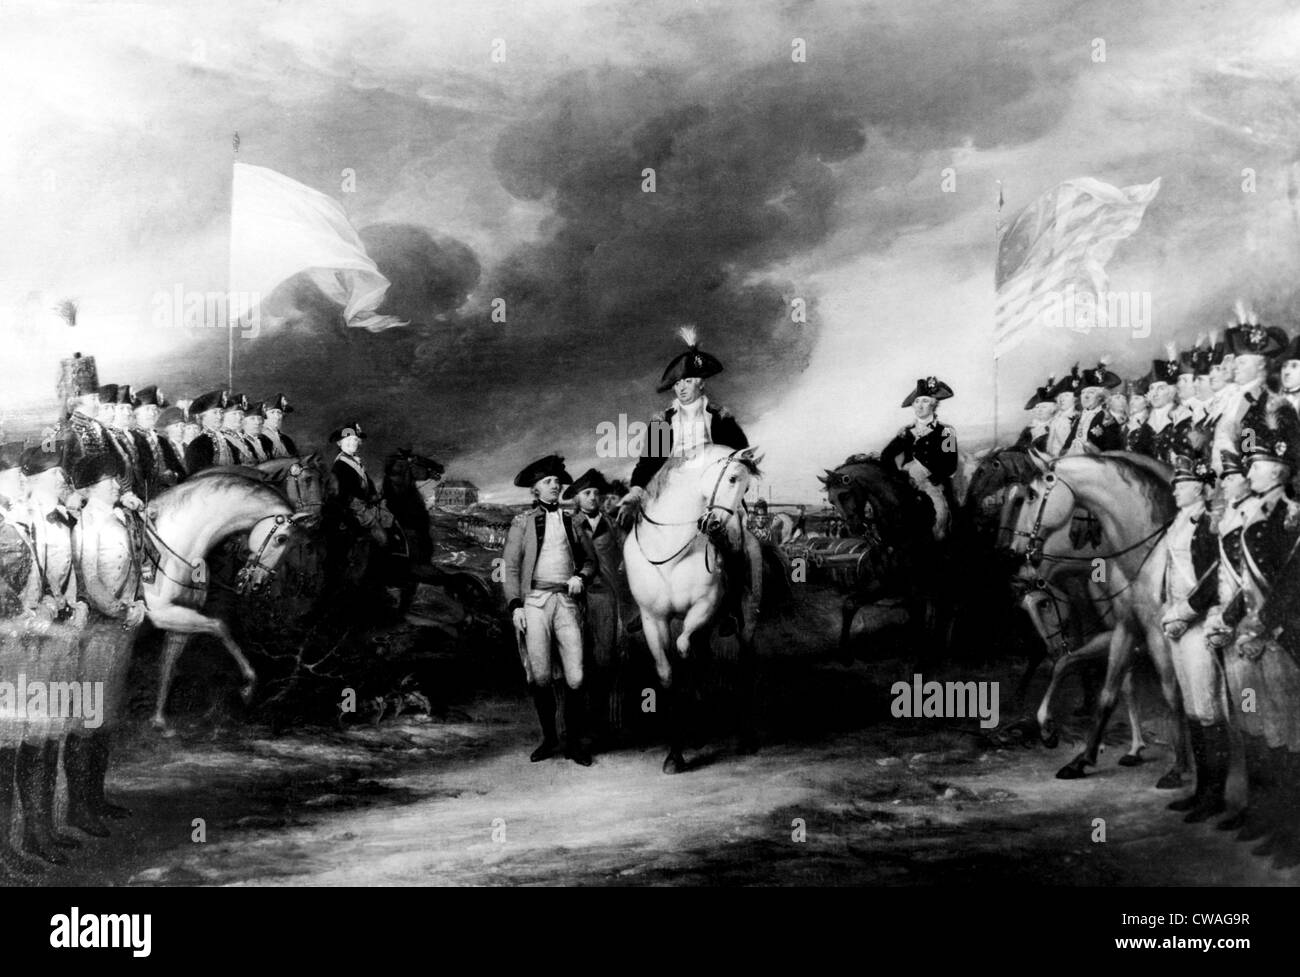 General George Washington (Mitte), dargestellt in der Kapitulation von Cornwallis bei Yorktown, 1781... Höflichkeit: CSU Archive / Stockfoto